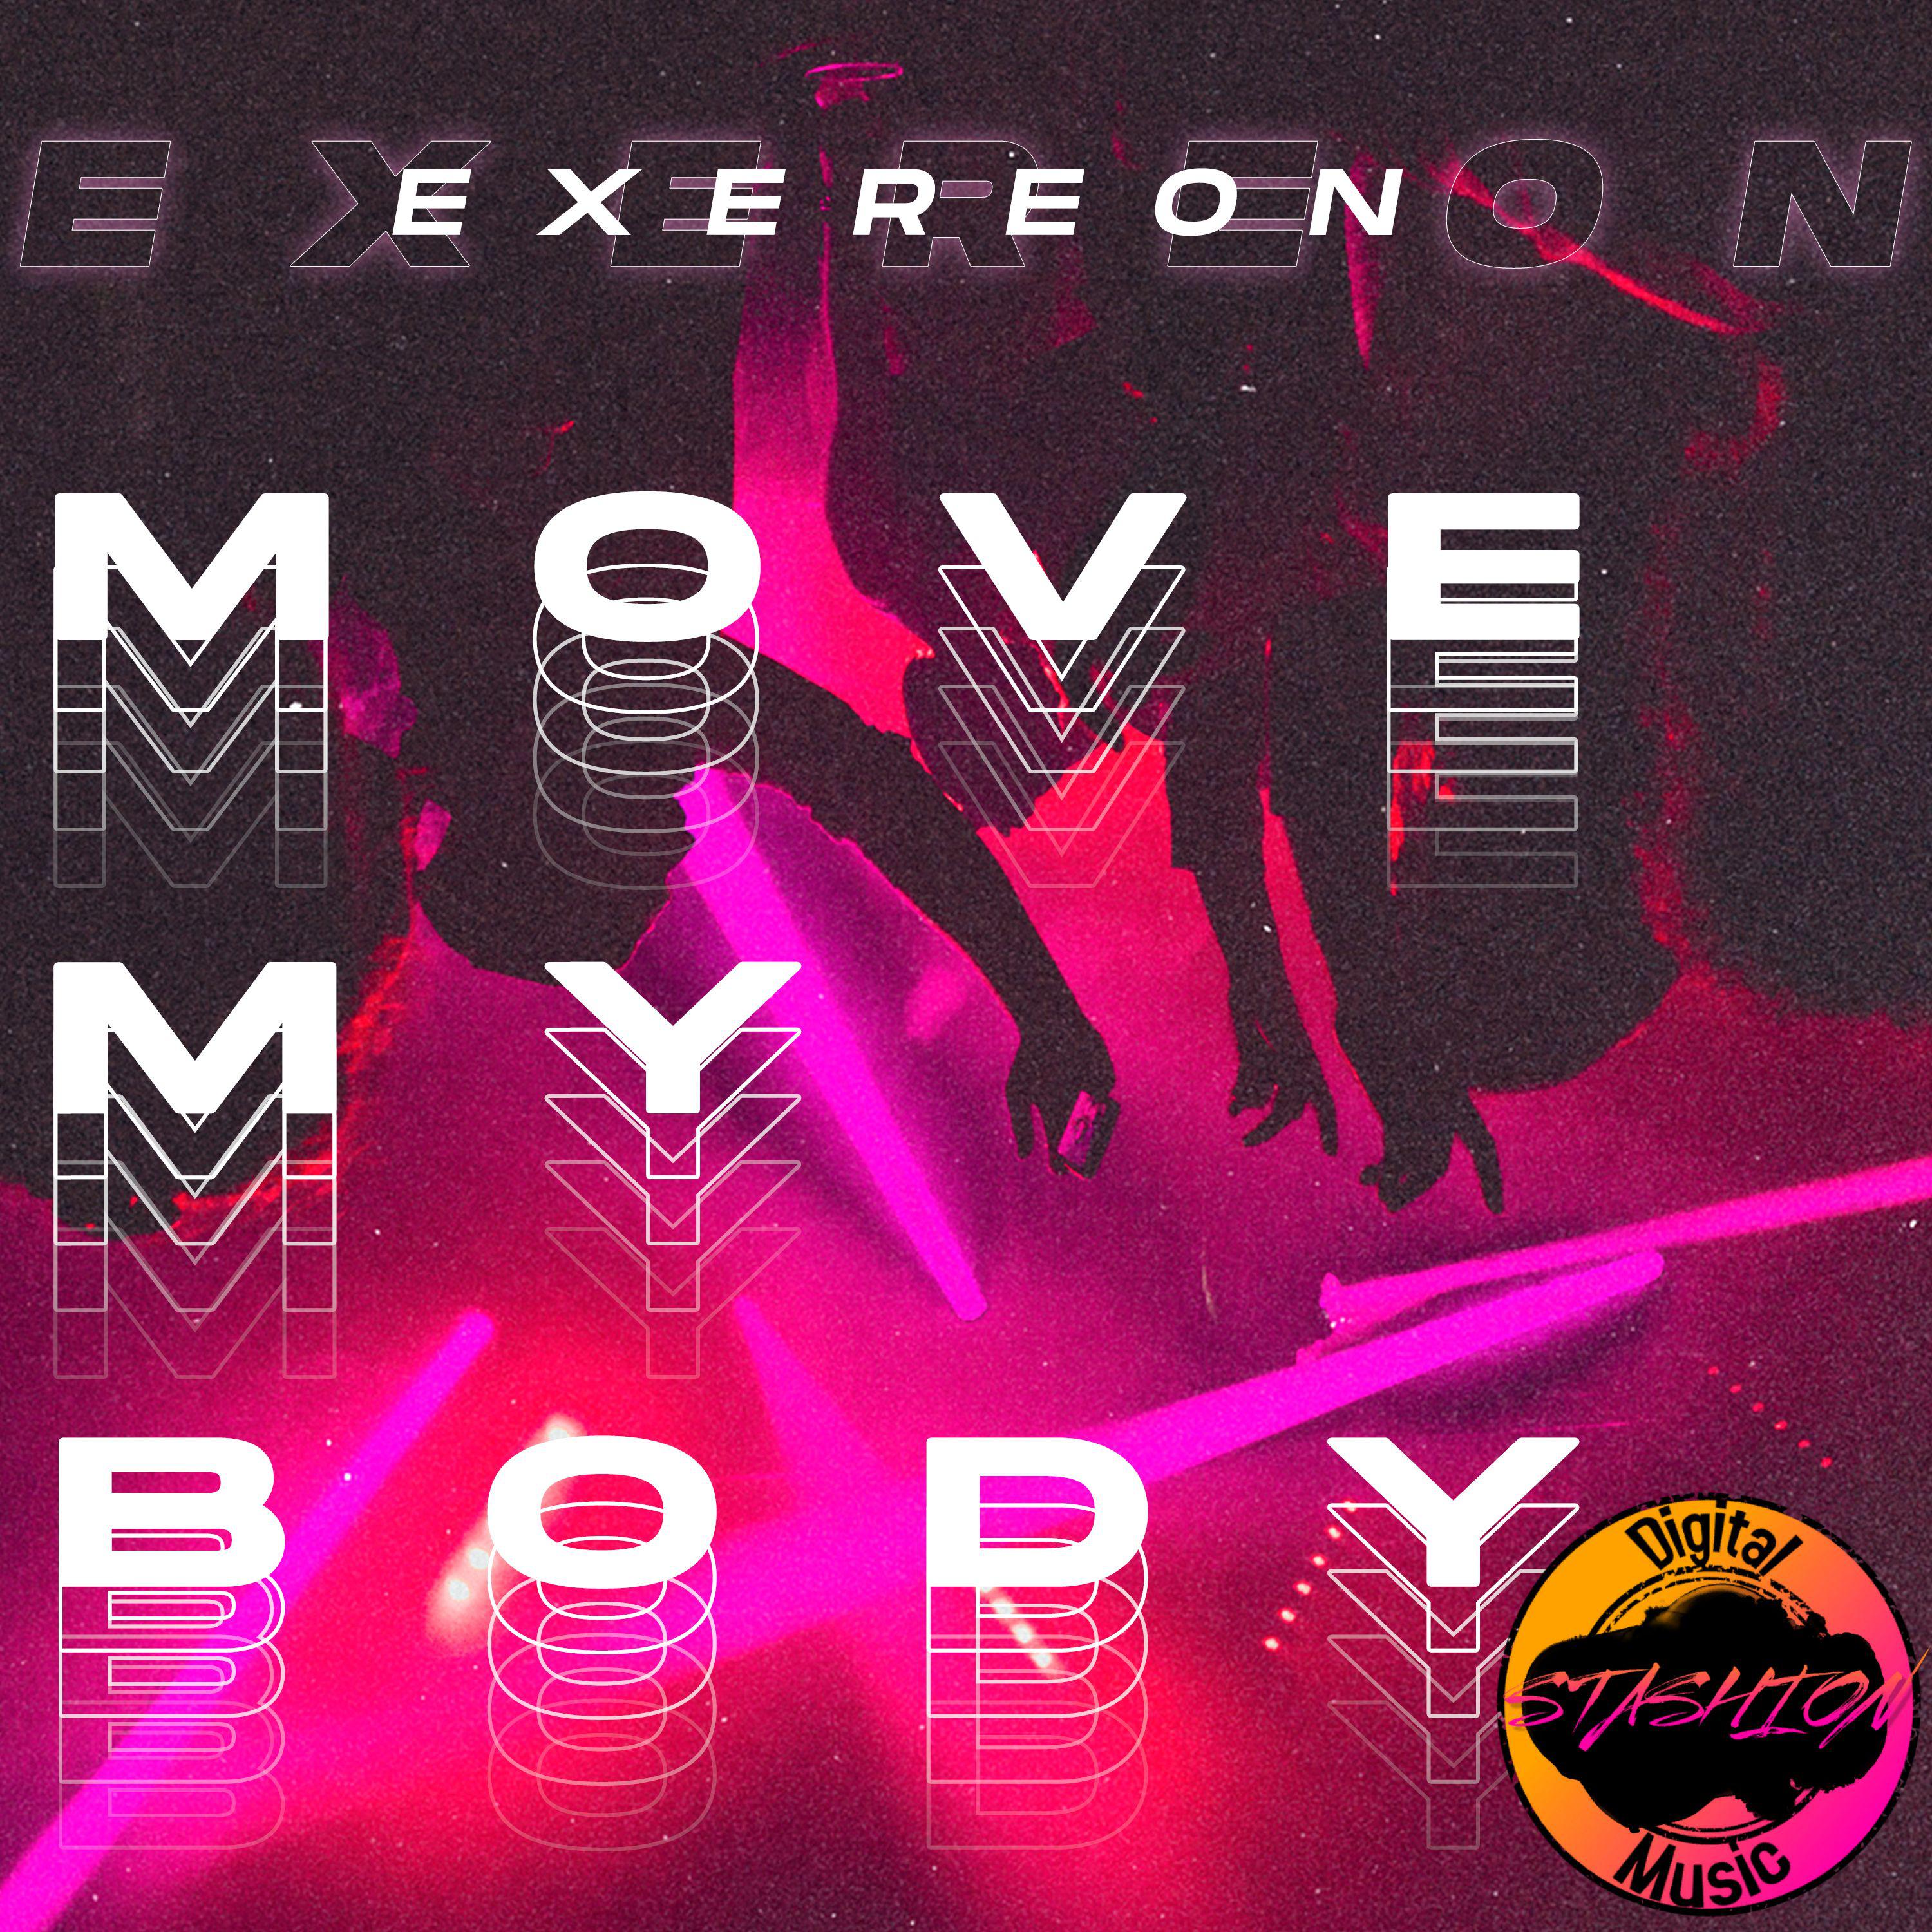 Постер альбома Move My Body